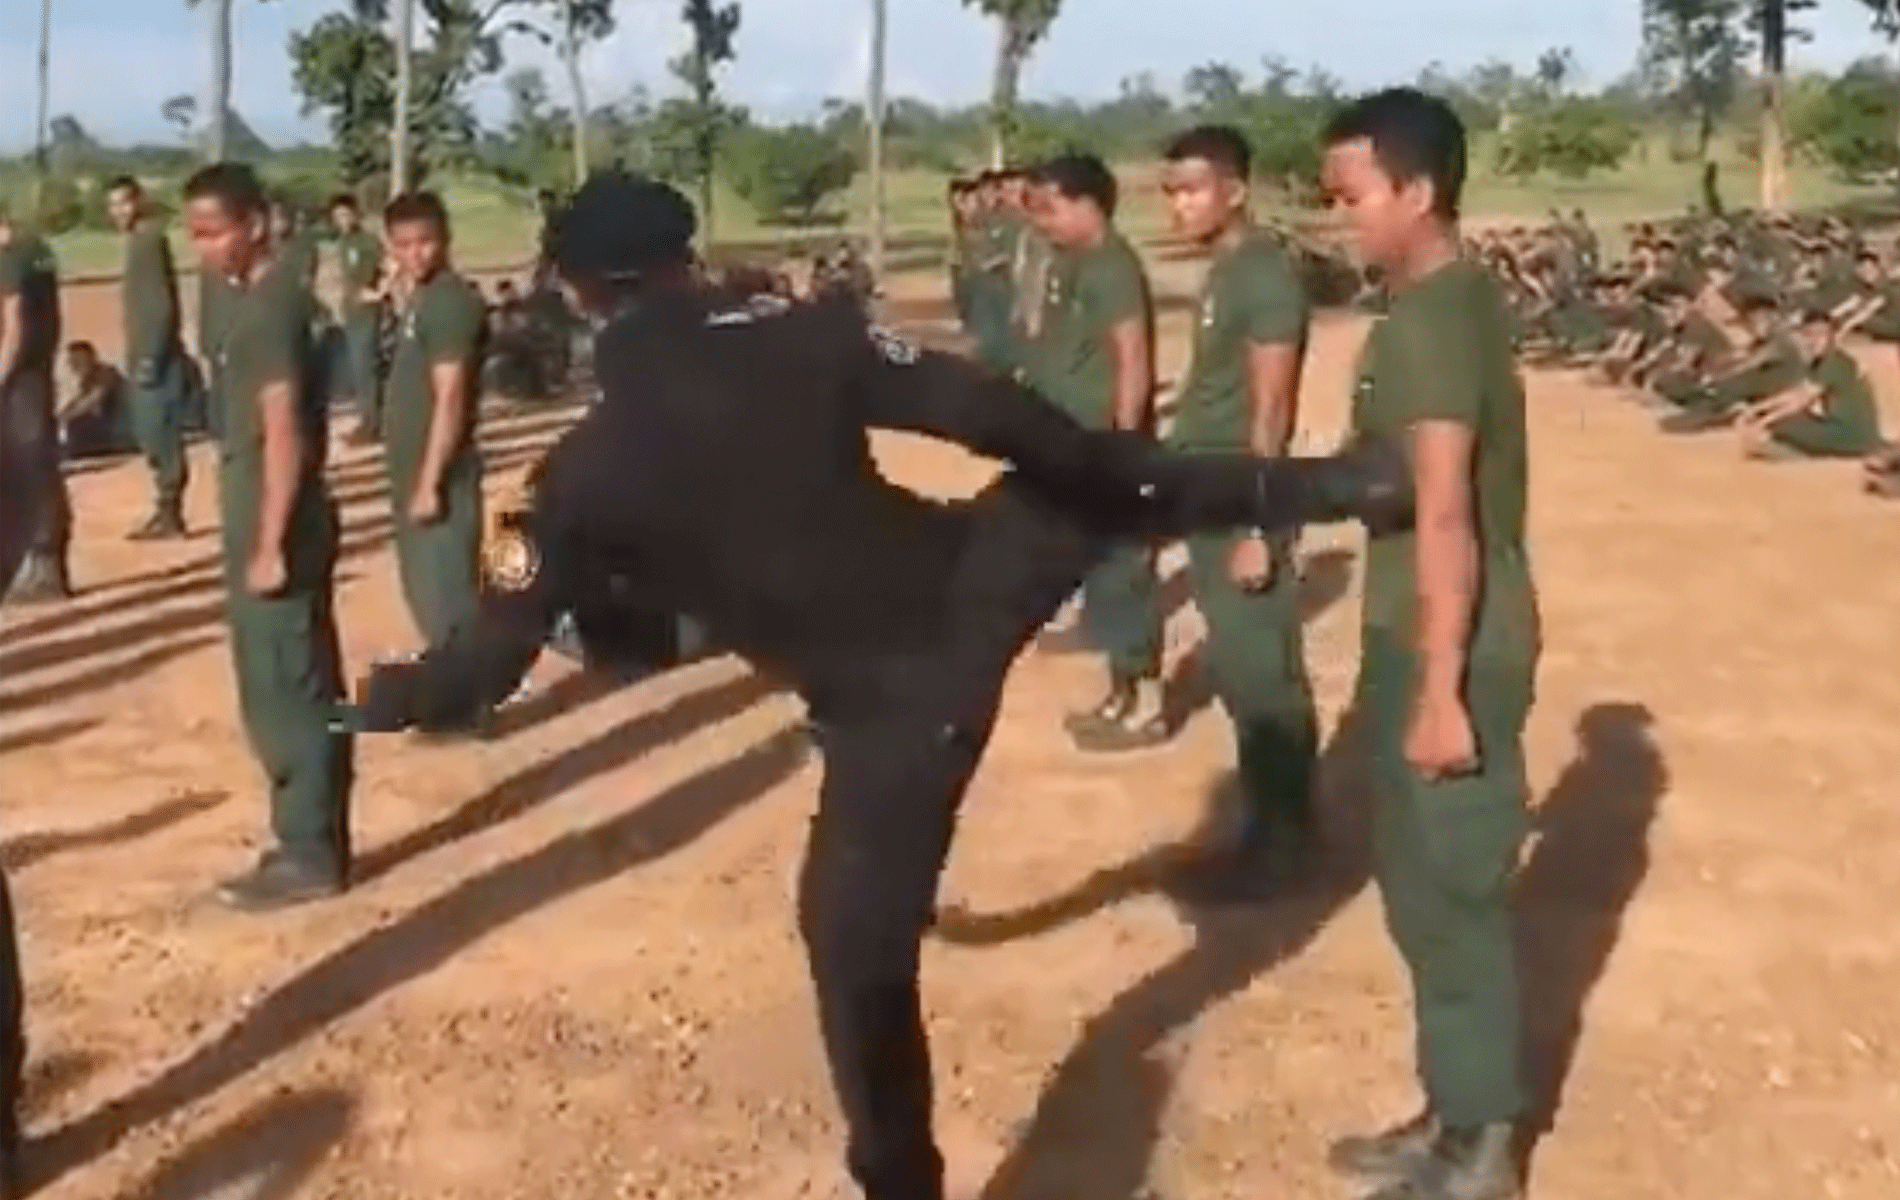 🎥 Kickboksende Politiechef laat even zien wie er de baas is! 'Kolere zeg'